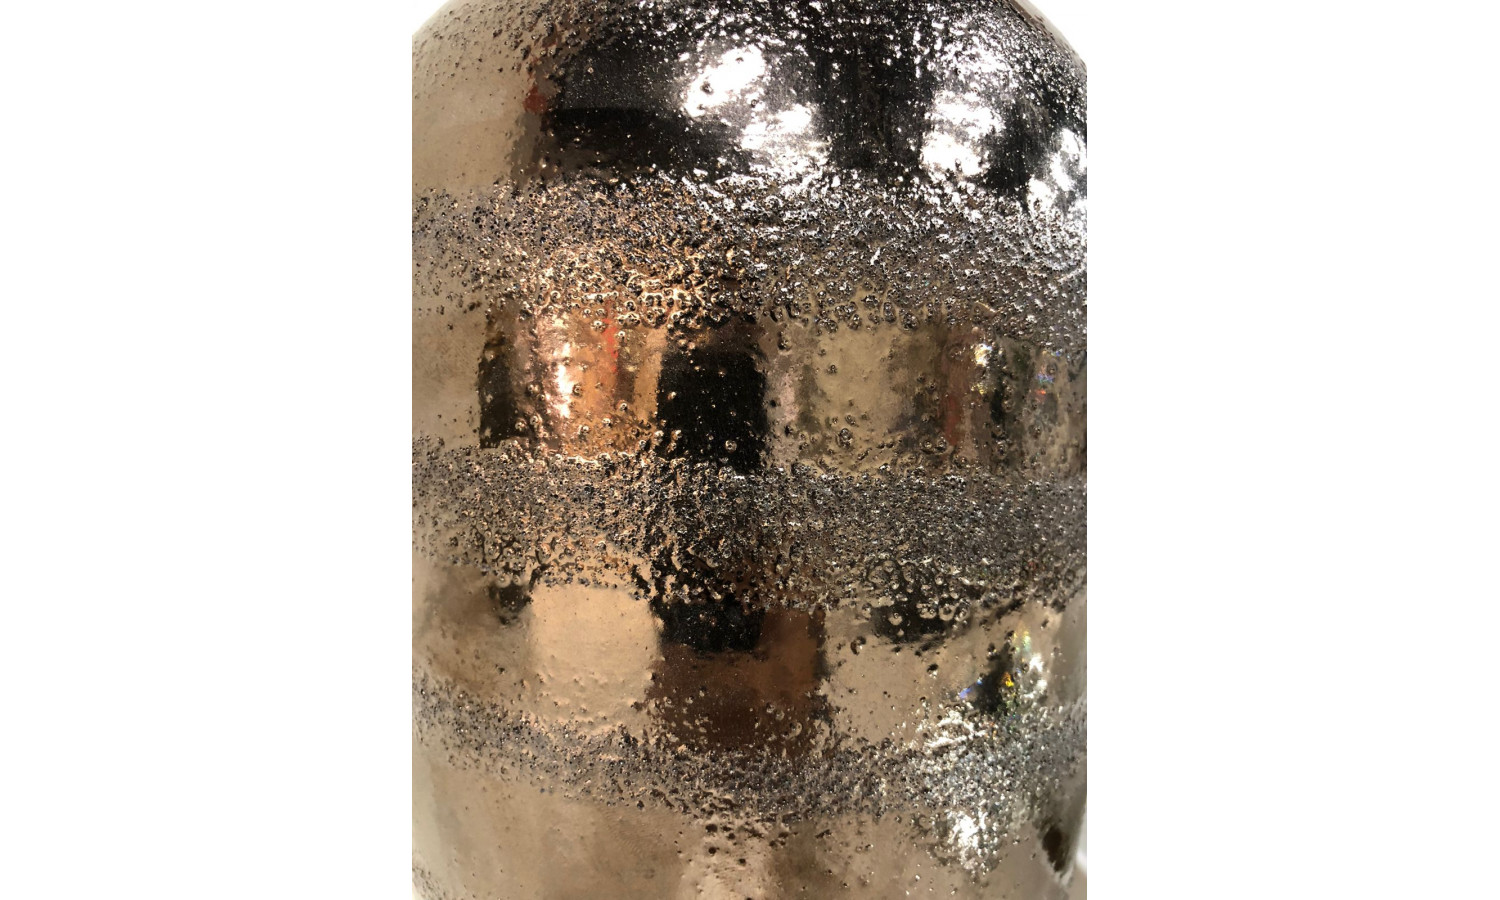 Ваза керамическая с крышкой IST-061, 11,5х35 см, коричневый